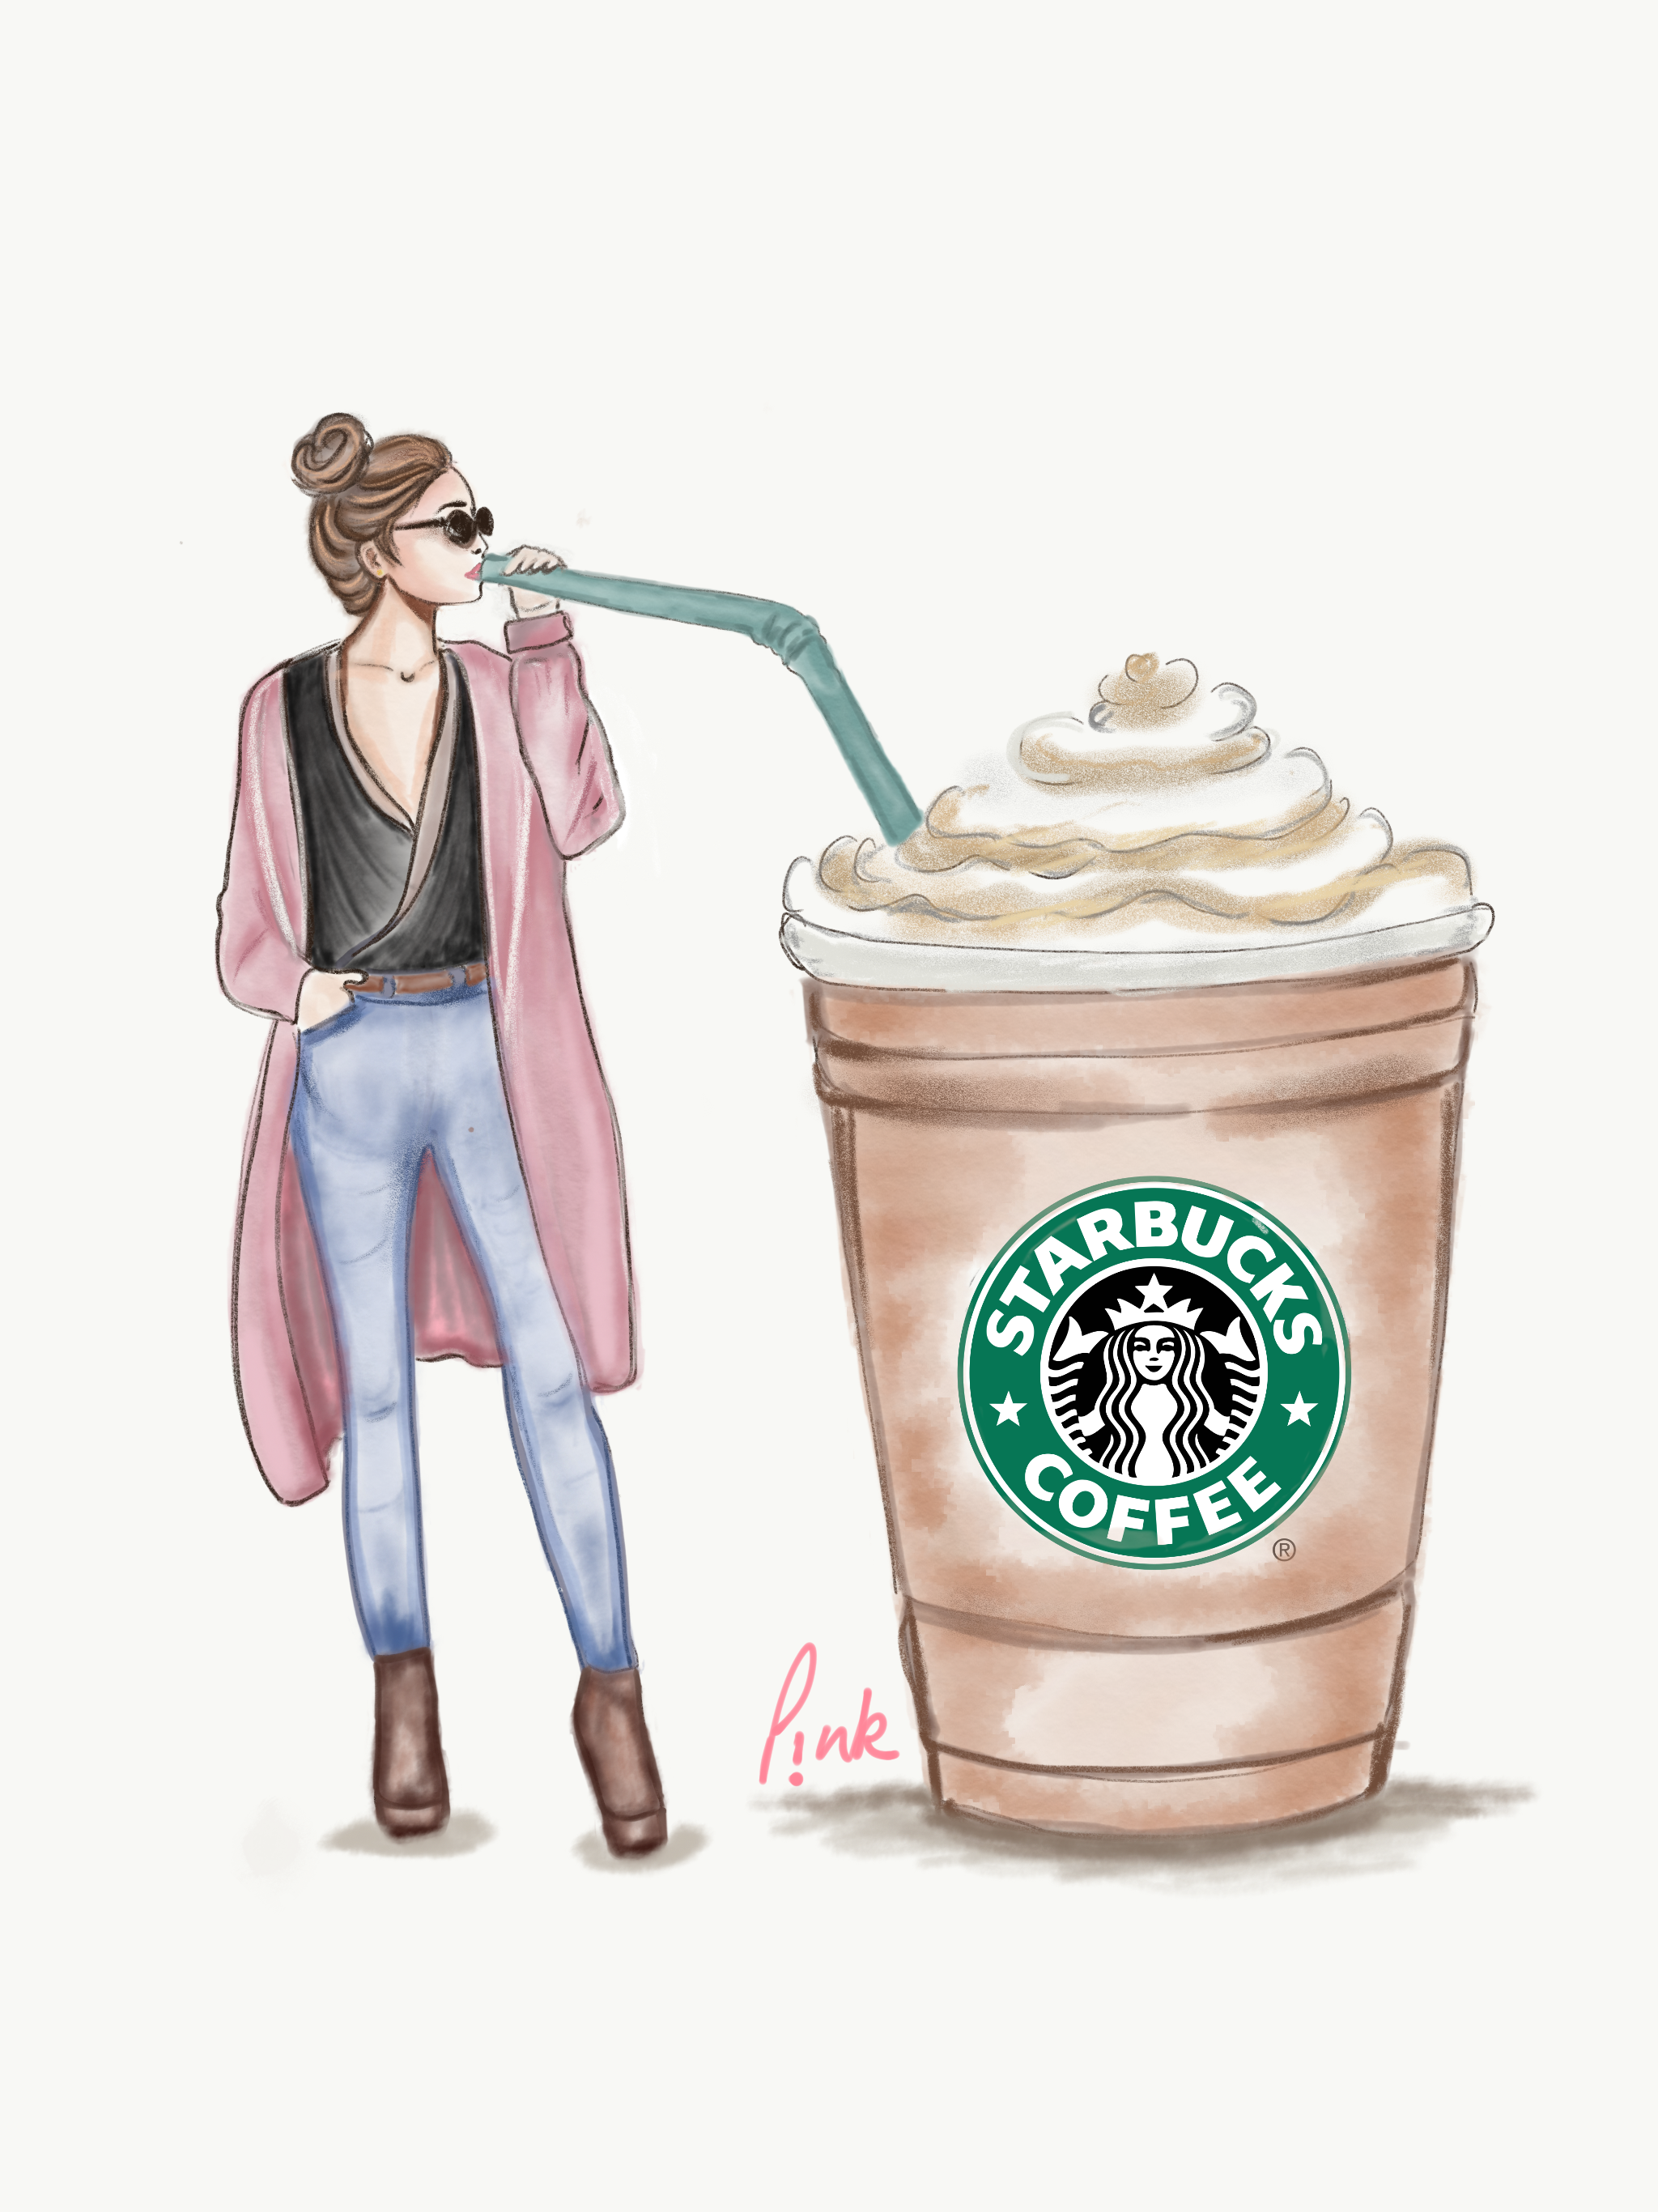 Starbucks fadhion girl. Starbucks wallpaper, Starbucks background